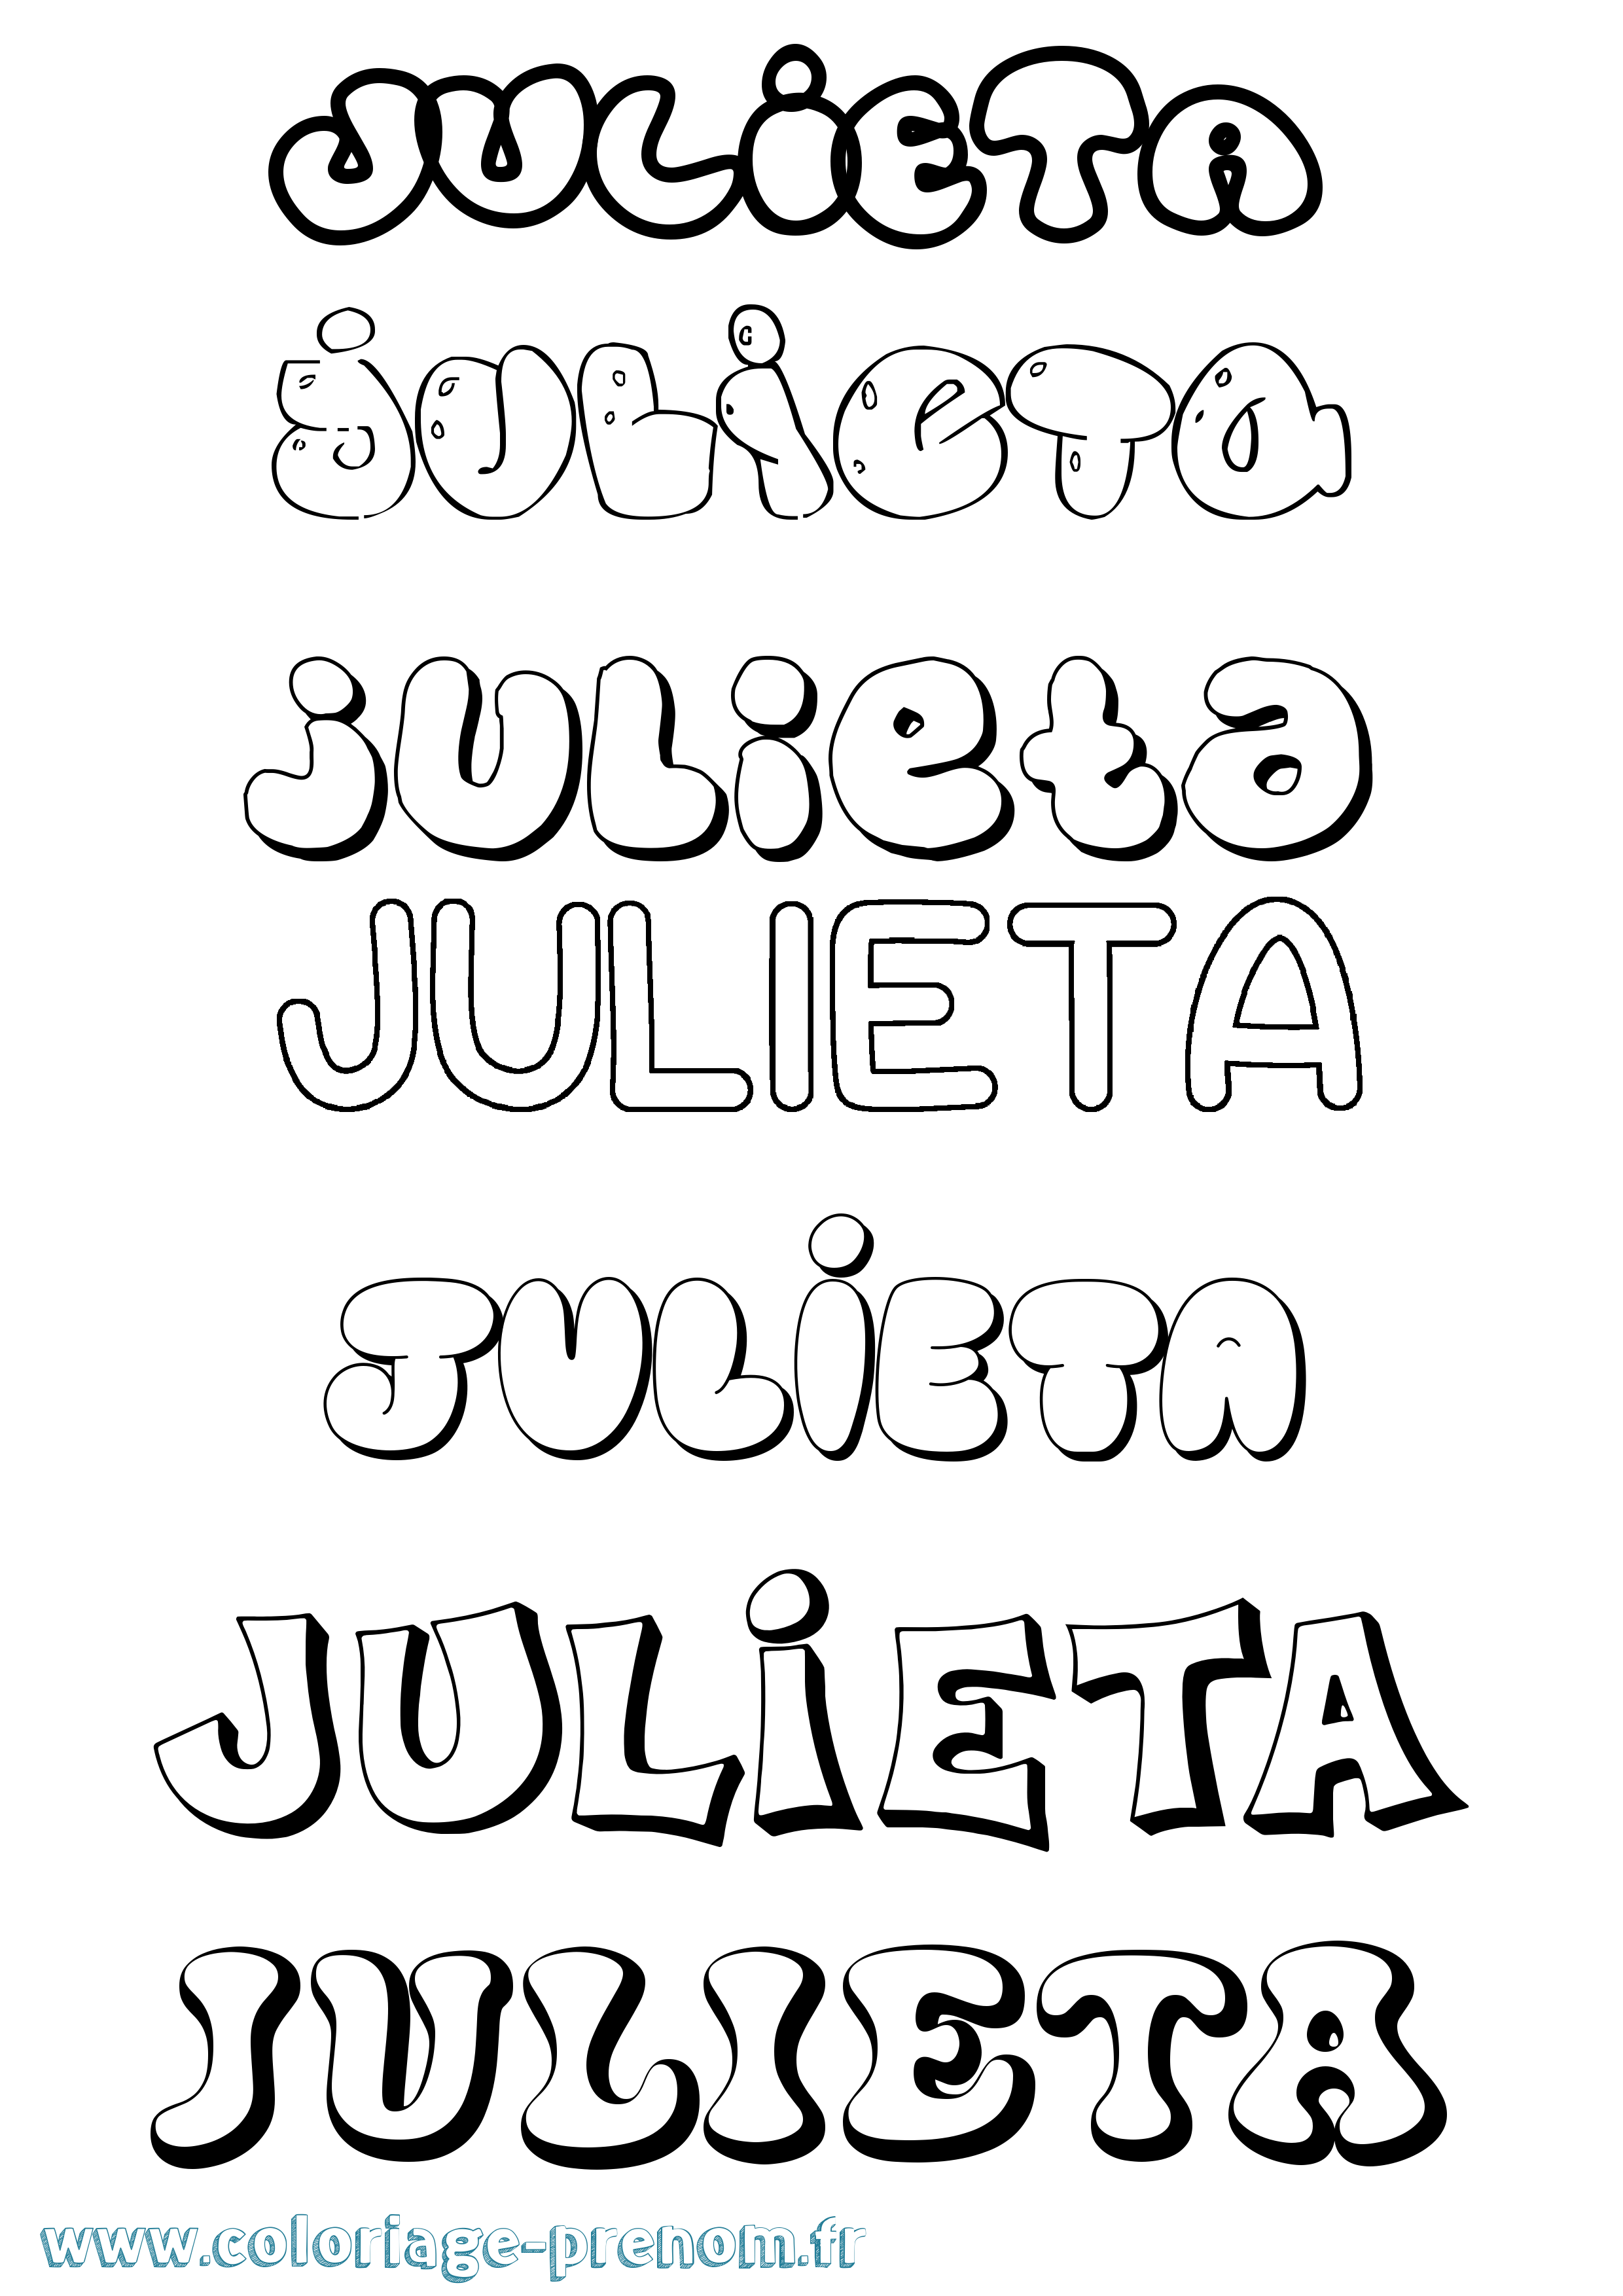 Coloriage prénom Julieta Bubble